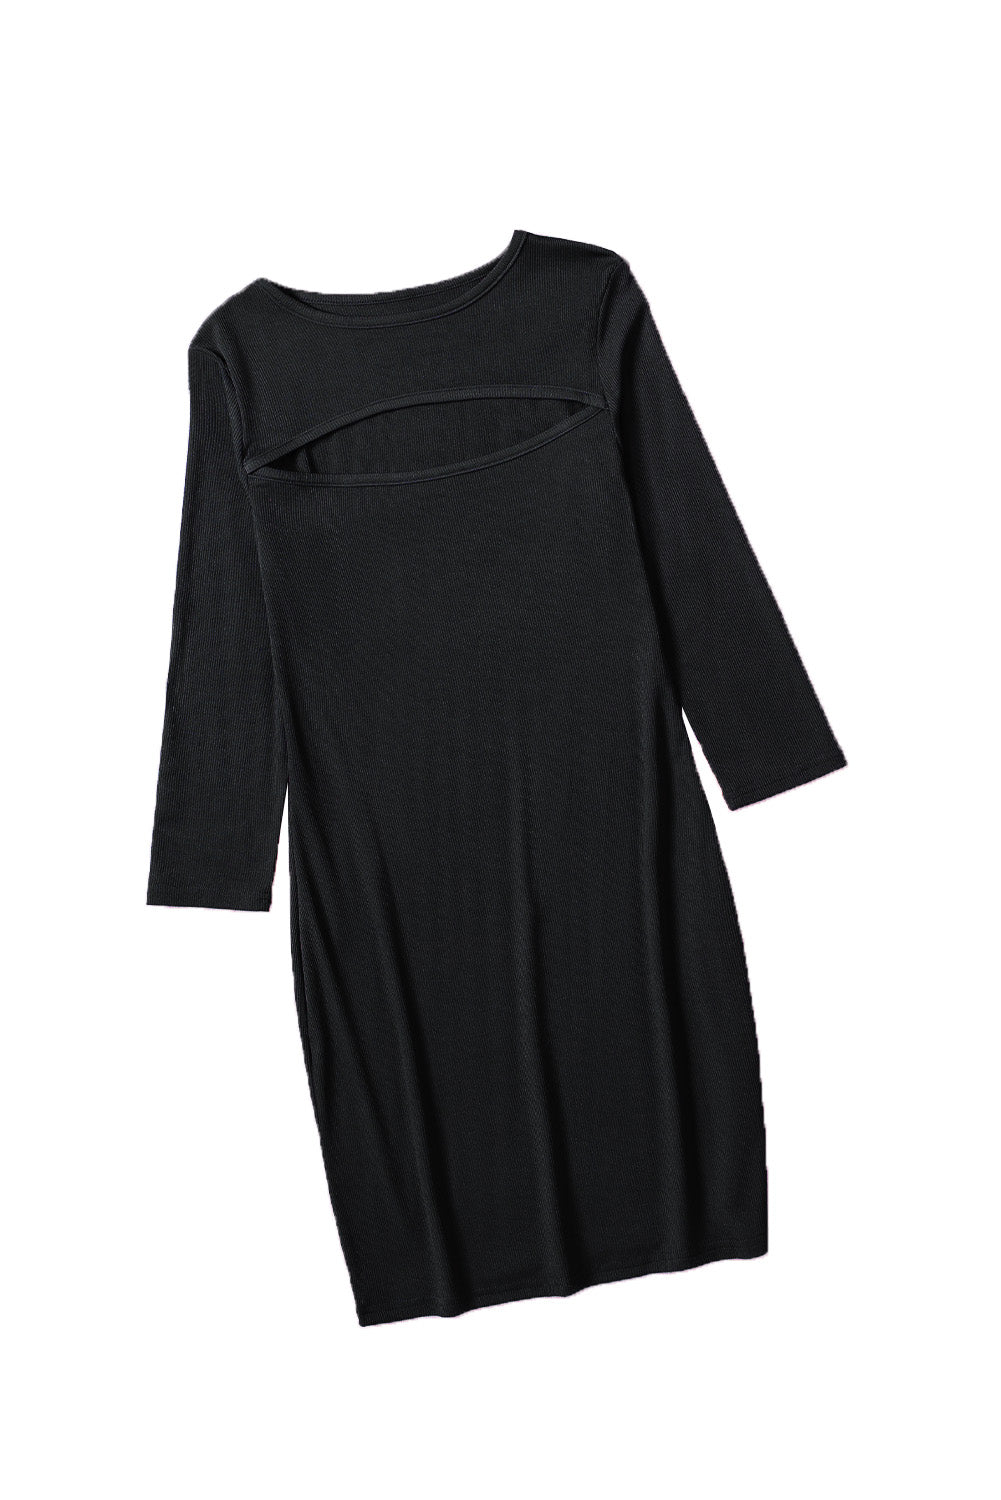 Mini-robe moulante noire à manches longues et découpes